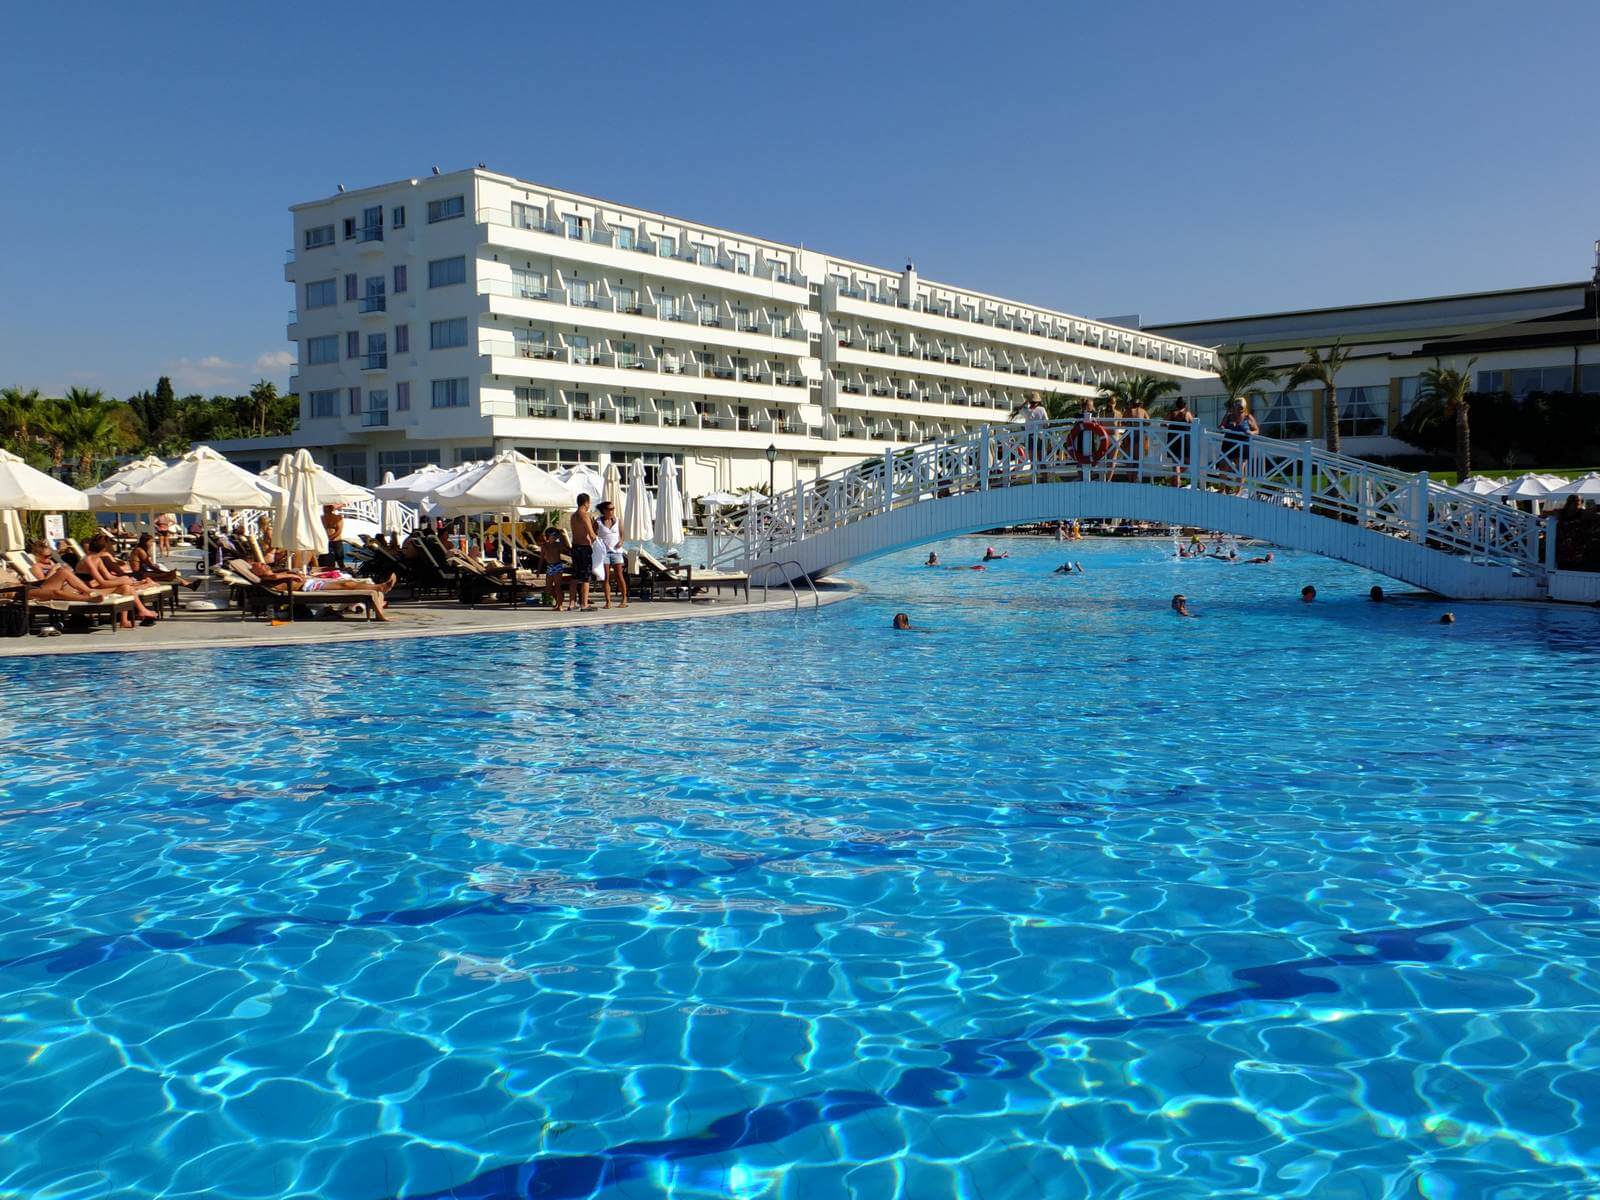 Foto: Hotel Acapulco groer Pool und Hotelgebude und Brcke - Lupe Reisen